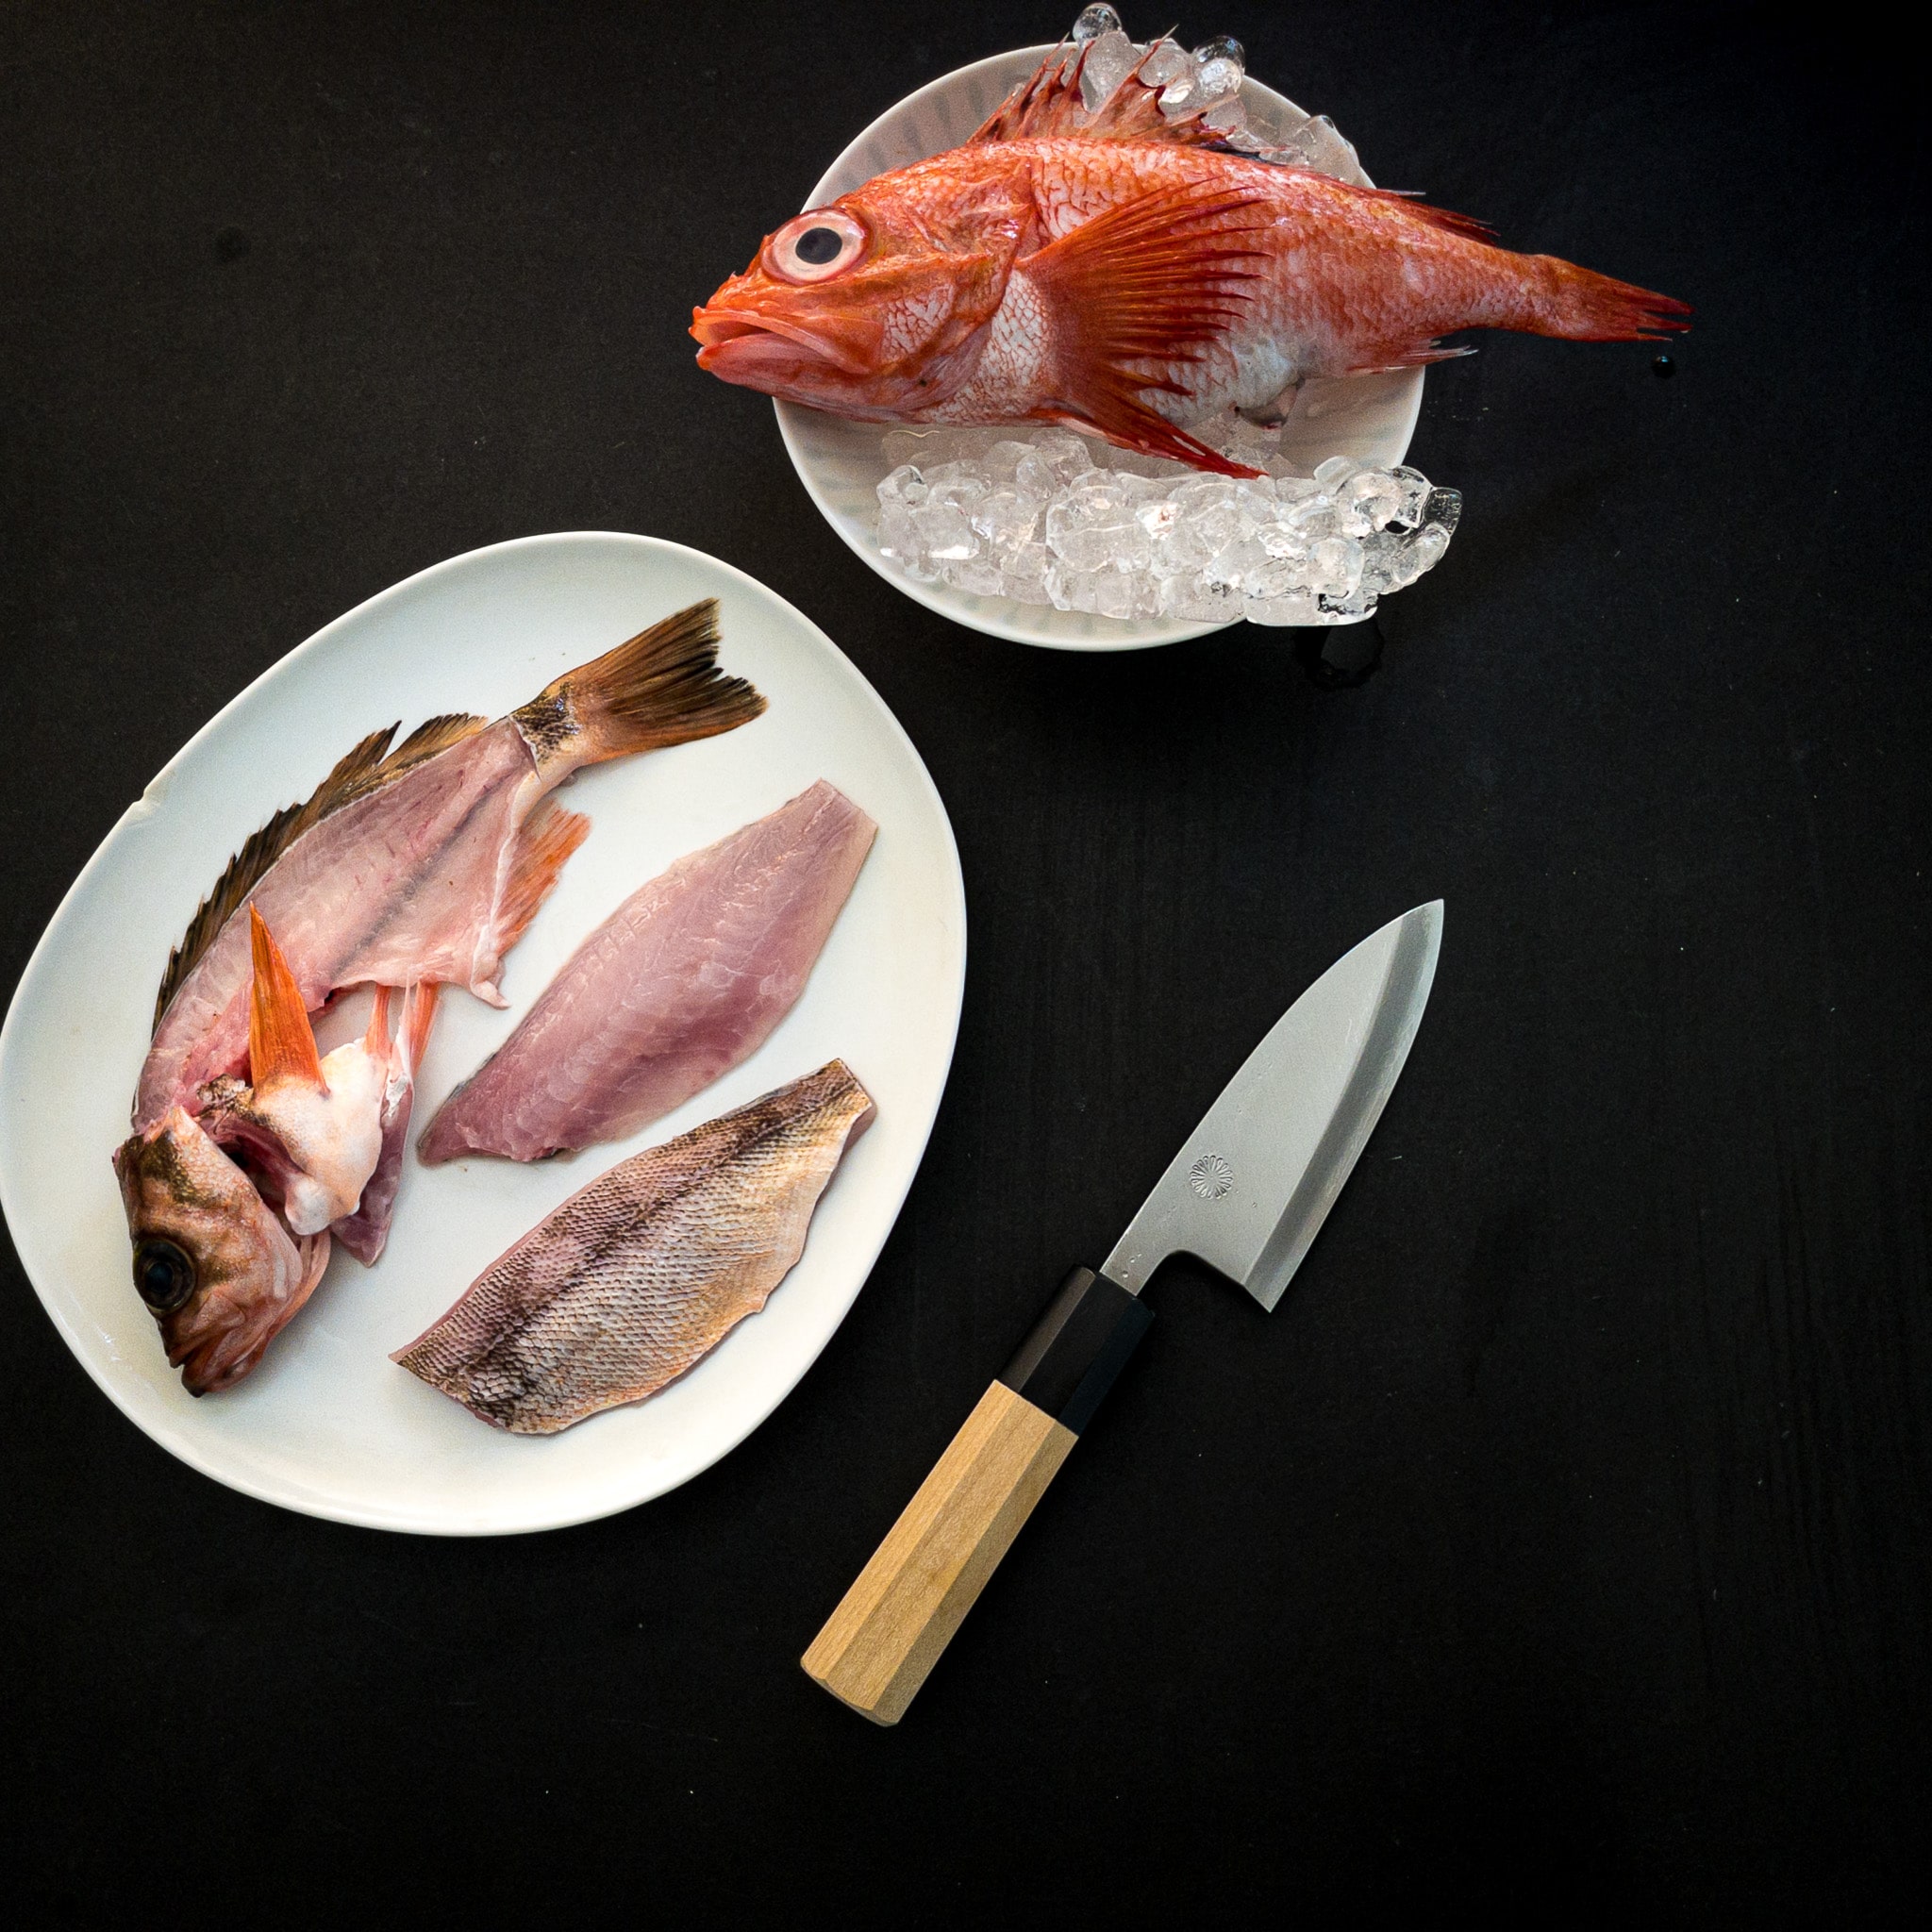 GHOST Small Fish Knife Set 4” Mini Deba + Small Fish Scaler Tool +